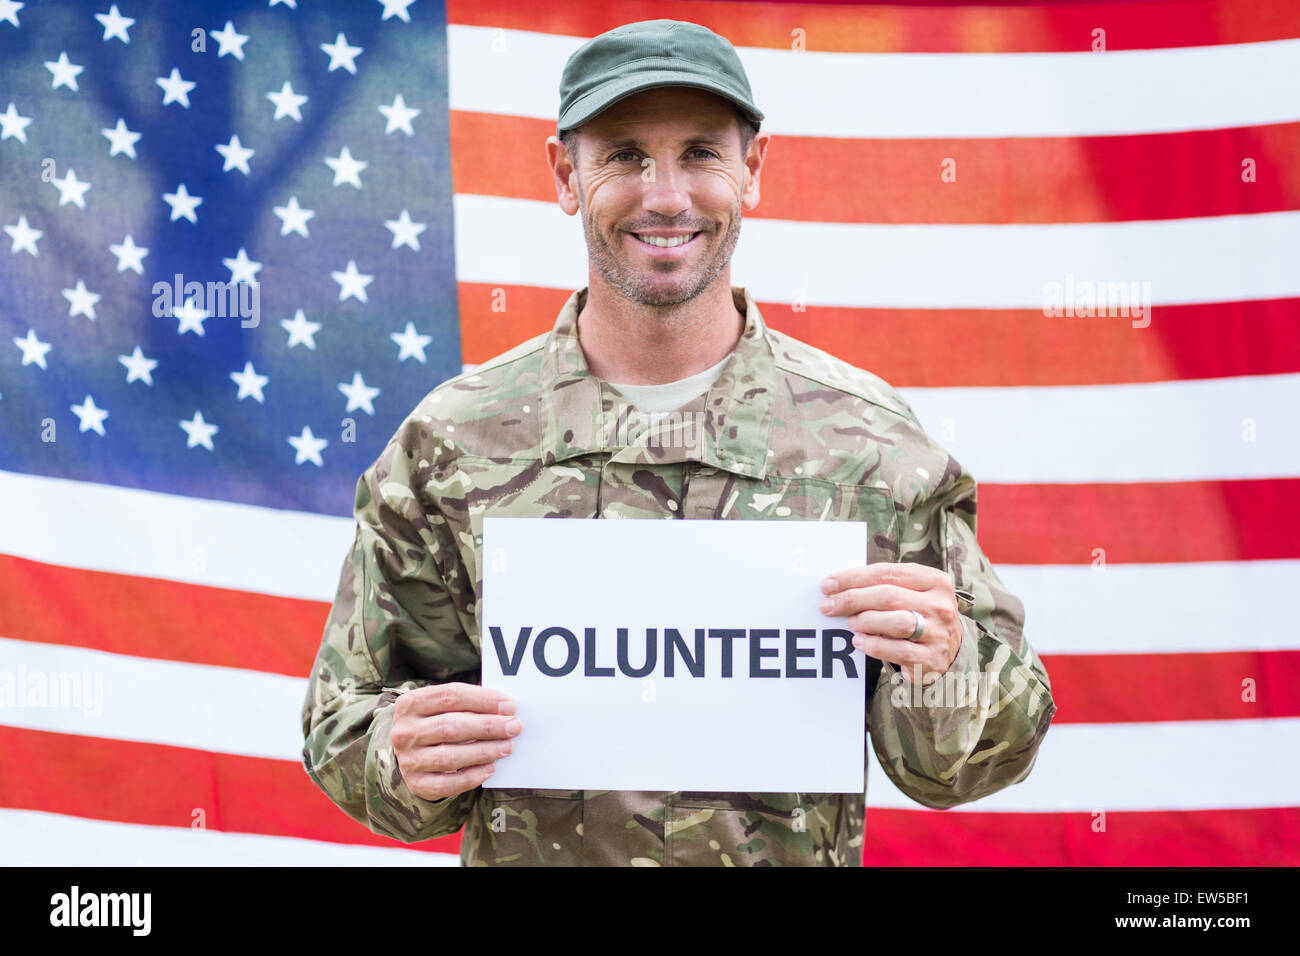 Amerikanischer Soldat Rekrutierung Schild Stockfoto